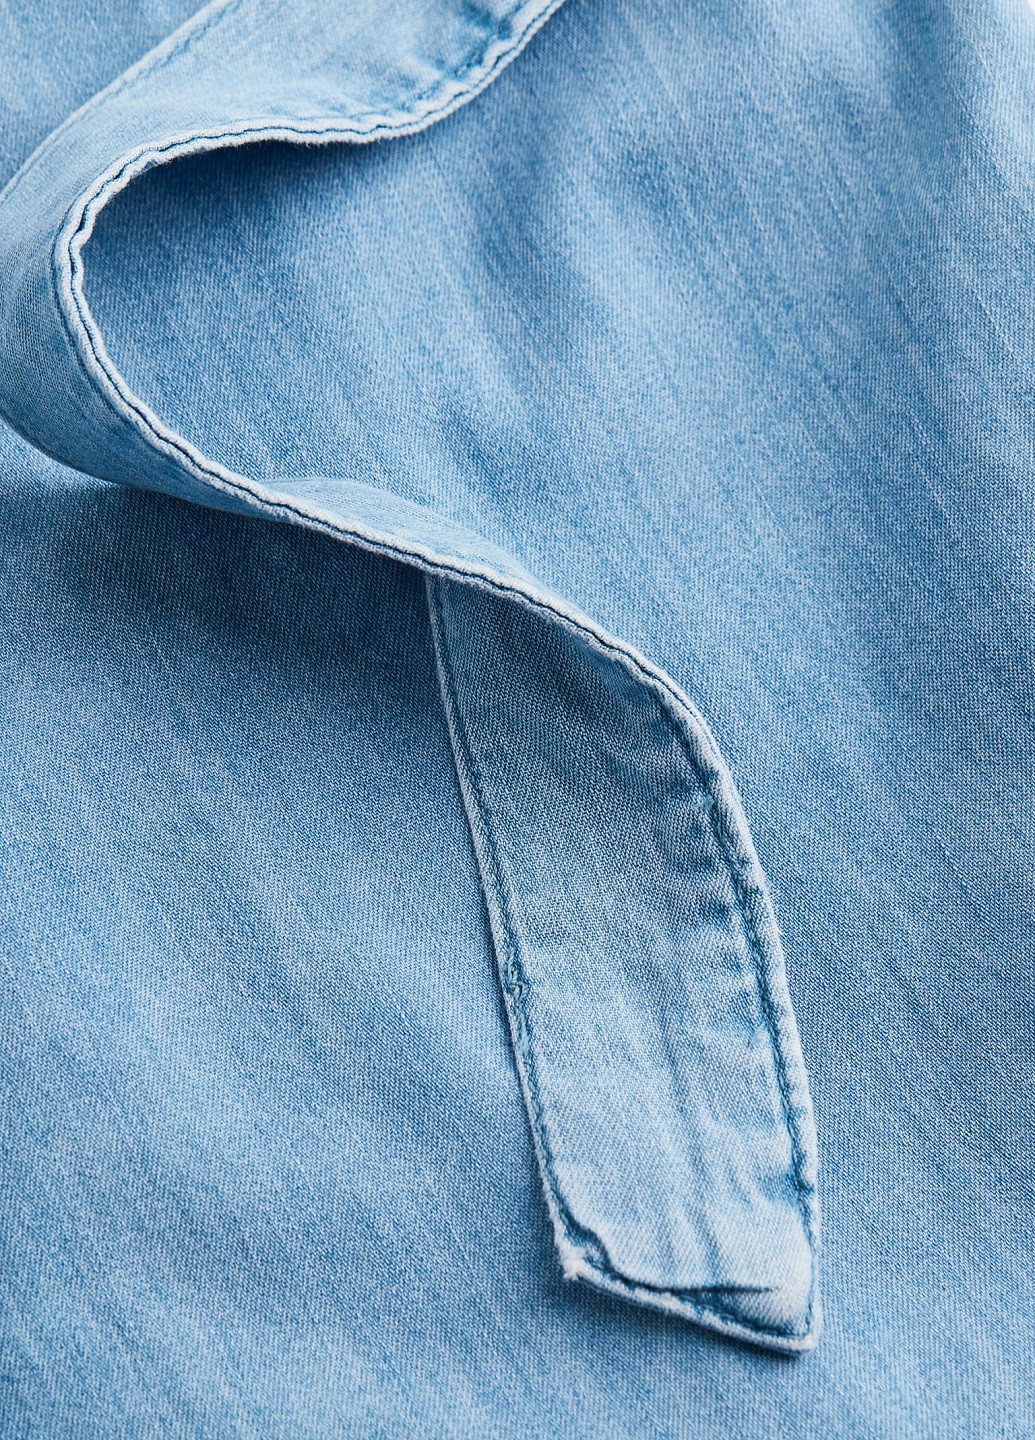 Голубое джинсовое платье H&M однотонное